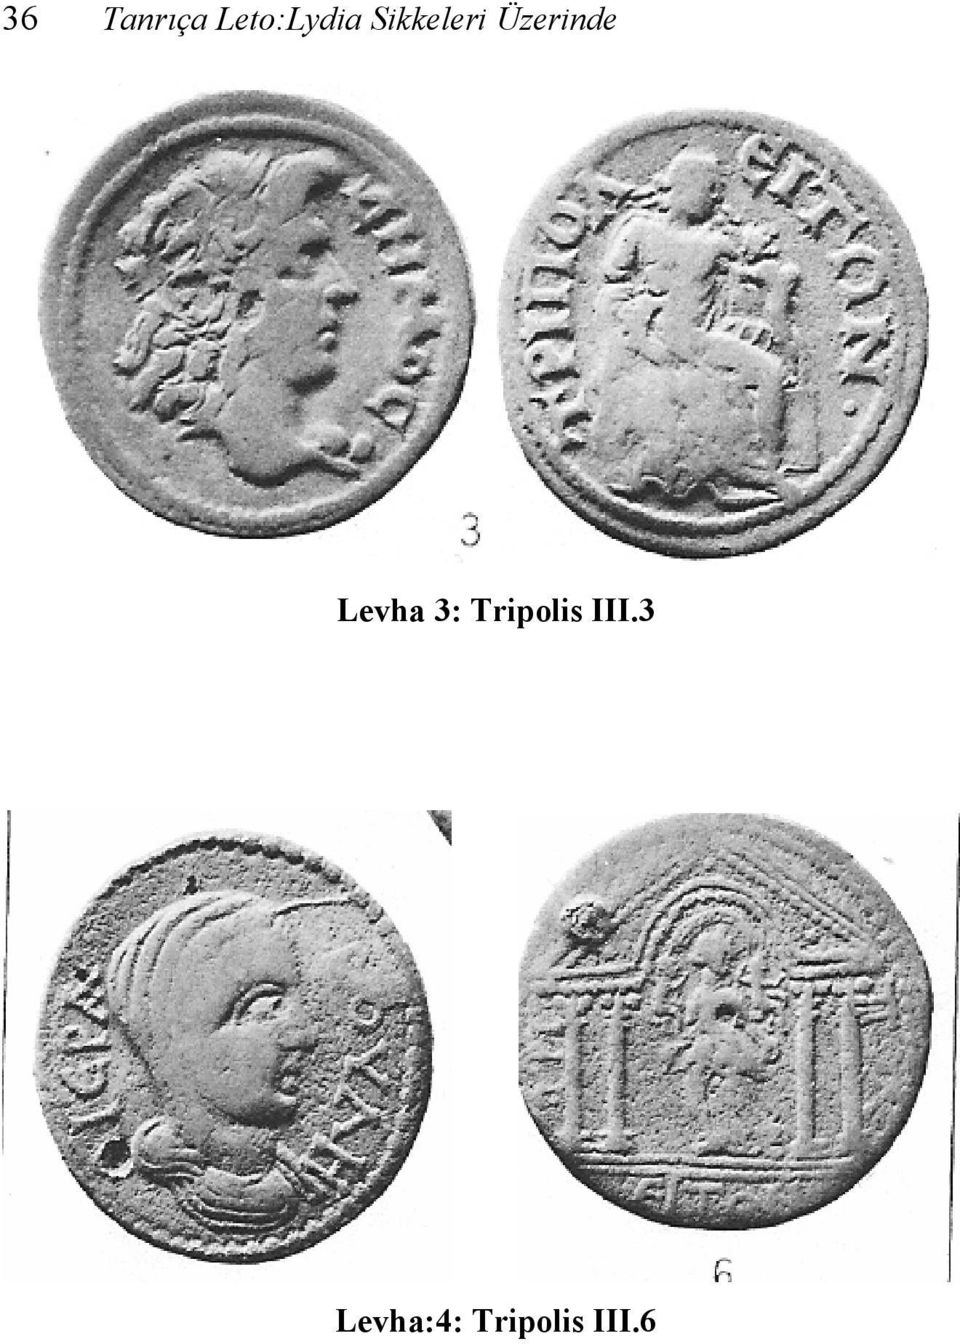 Levha 3: Tripolis III.